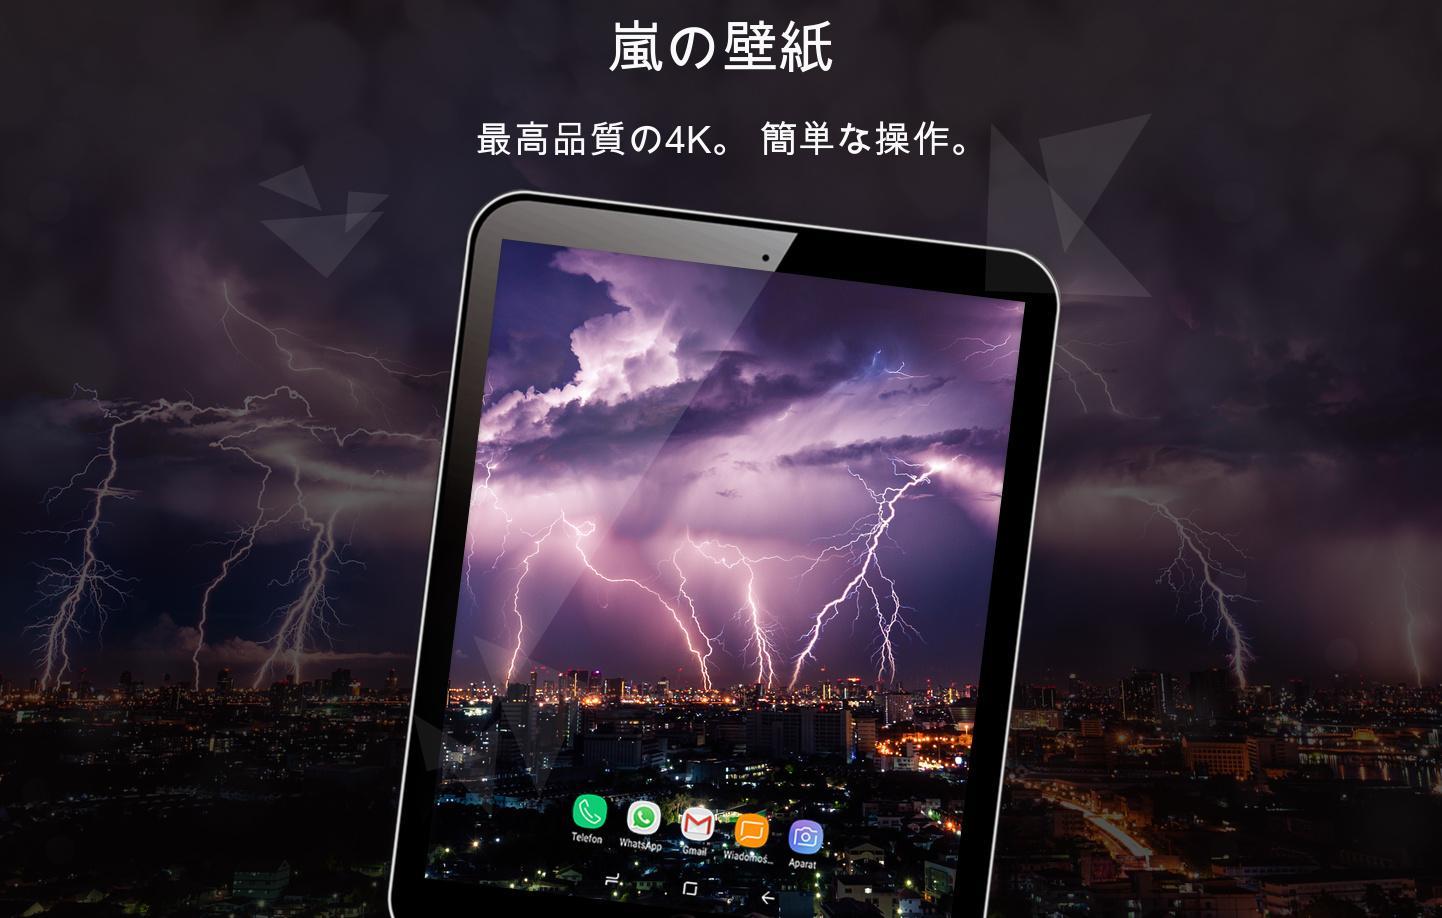 Android 用の 嵐の壁紙4k Apk をダウンロード